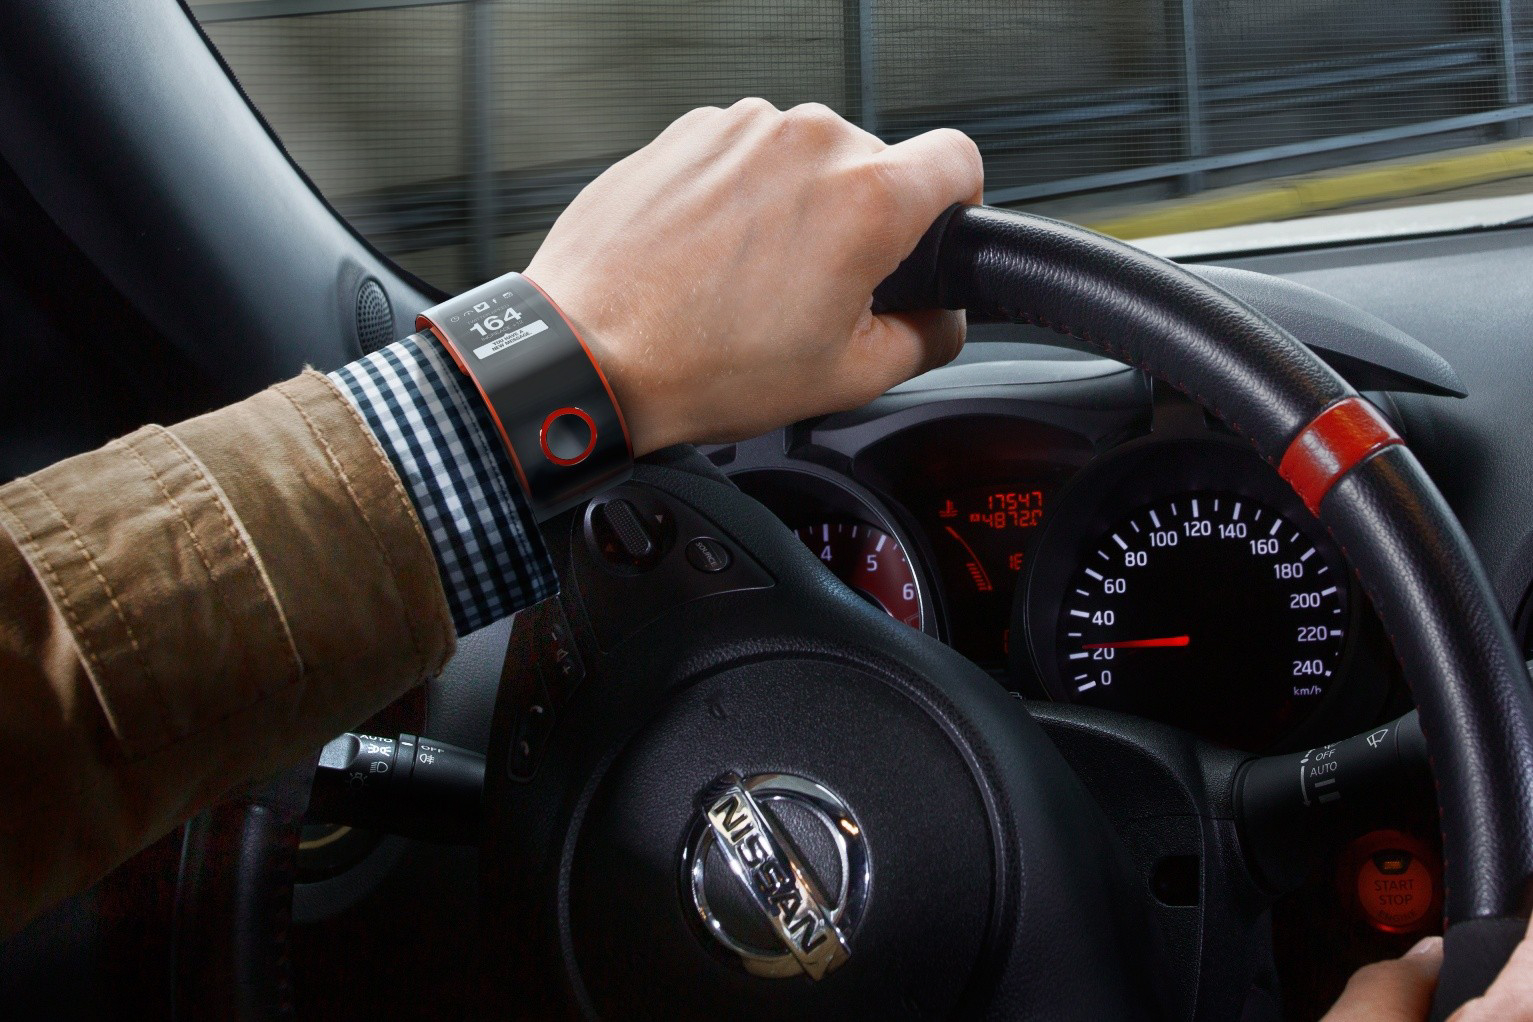 Nissan incursiona en la tecnología personal con el reloj concep